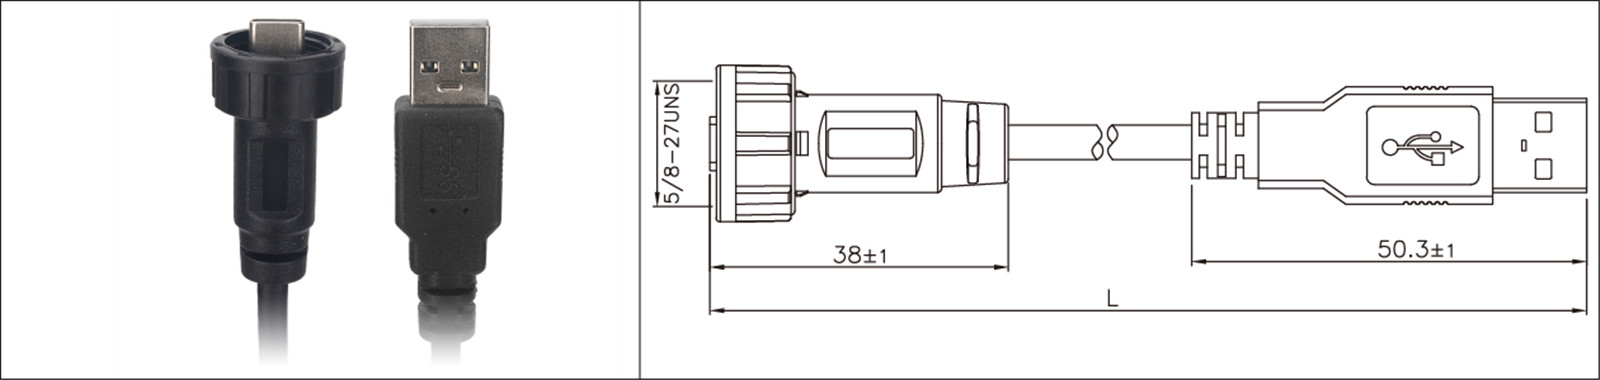 Micro USB montaje en panel tipo 2.0 3.0 hembra y macho impermeable IP67 cable de extensión sobremoldeado conector industrial-02 (1)